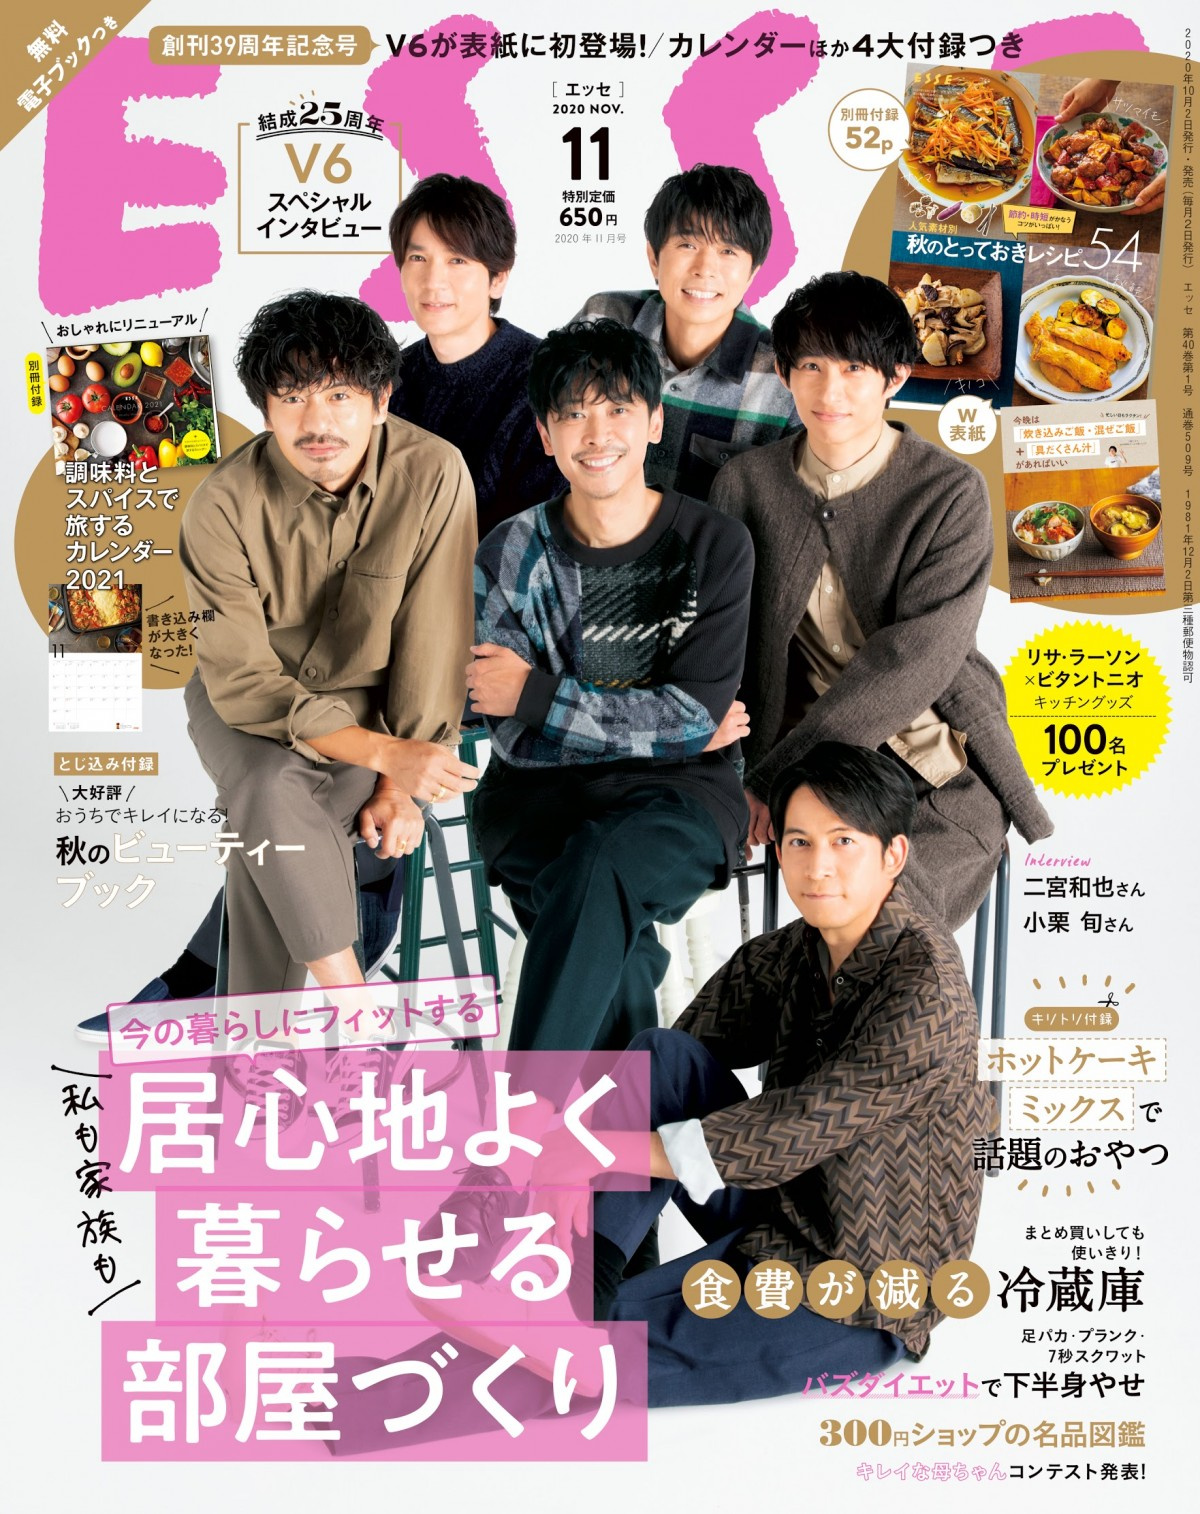 V6 Esse 創刊記念号で表紙に初登場 男性グループ初 坂本昌行 奇跡に感謝 Oricon News